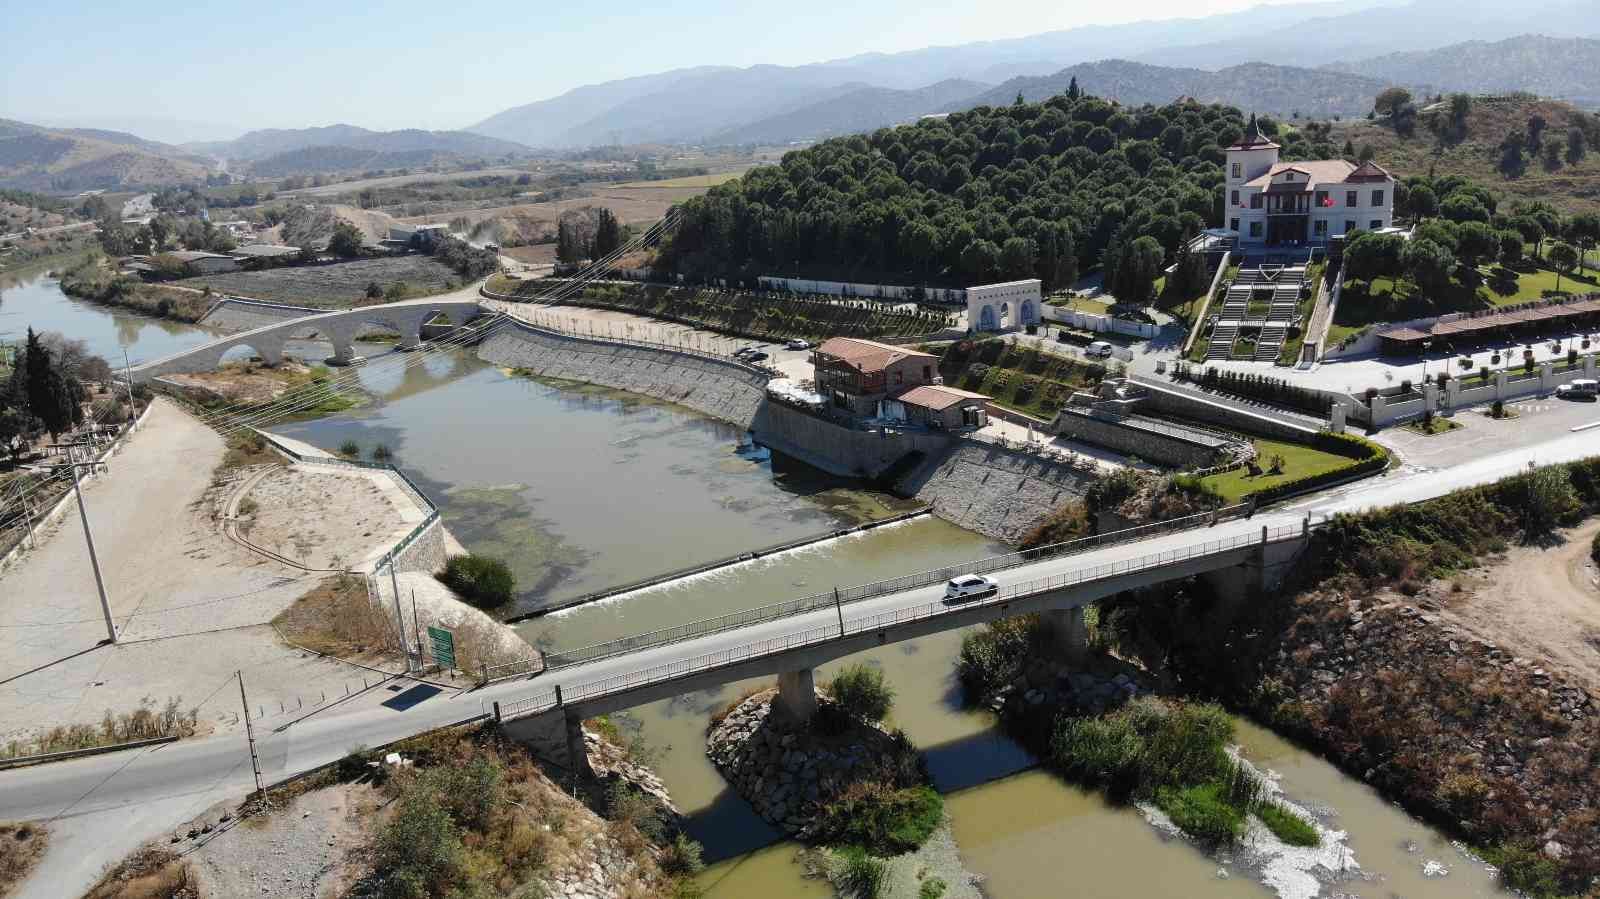 Merhum Başbakan Menderes’in yaptırdığı 67 yıllık köprü hikayesiyle dikkat çekiyor